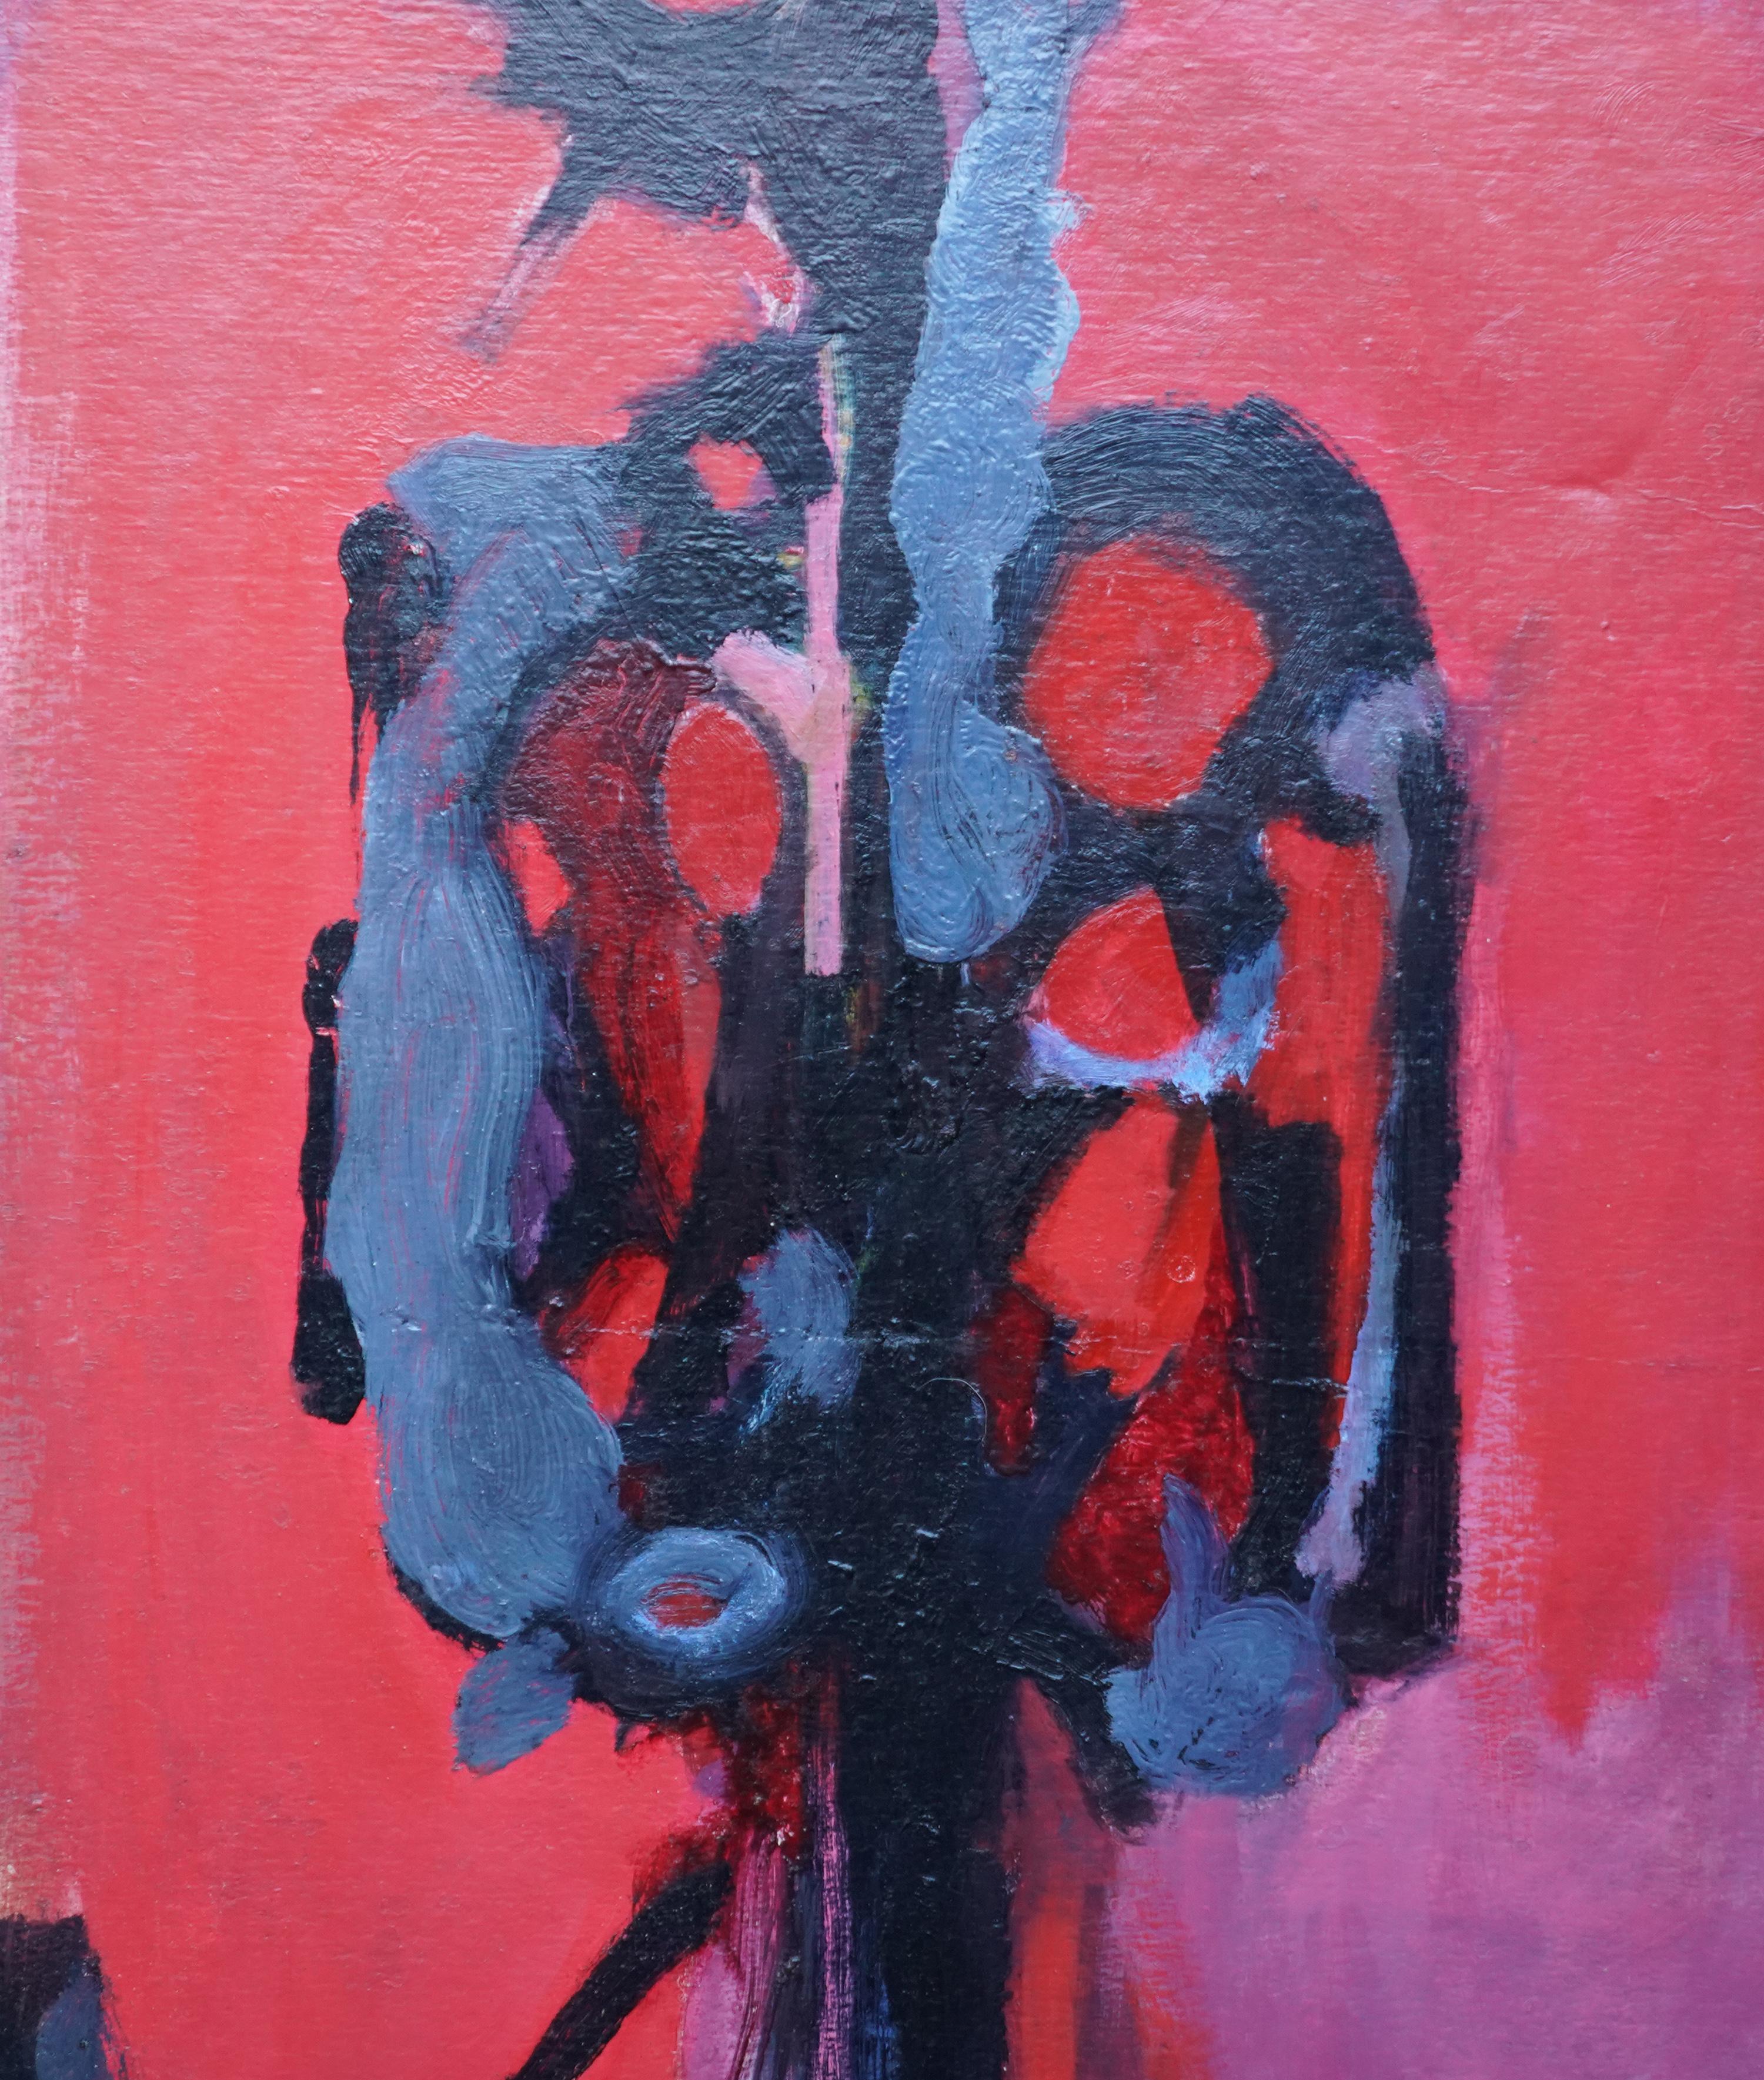 Rot Abstrakt, London 1955 – Ölgemälde des britischen abstrakten Expressionismus (Abstrakter Expressionismus), Painting, von Bernard Kay